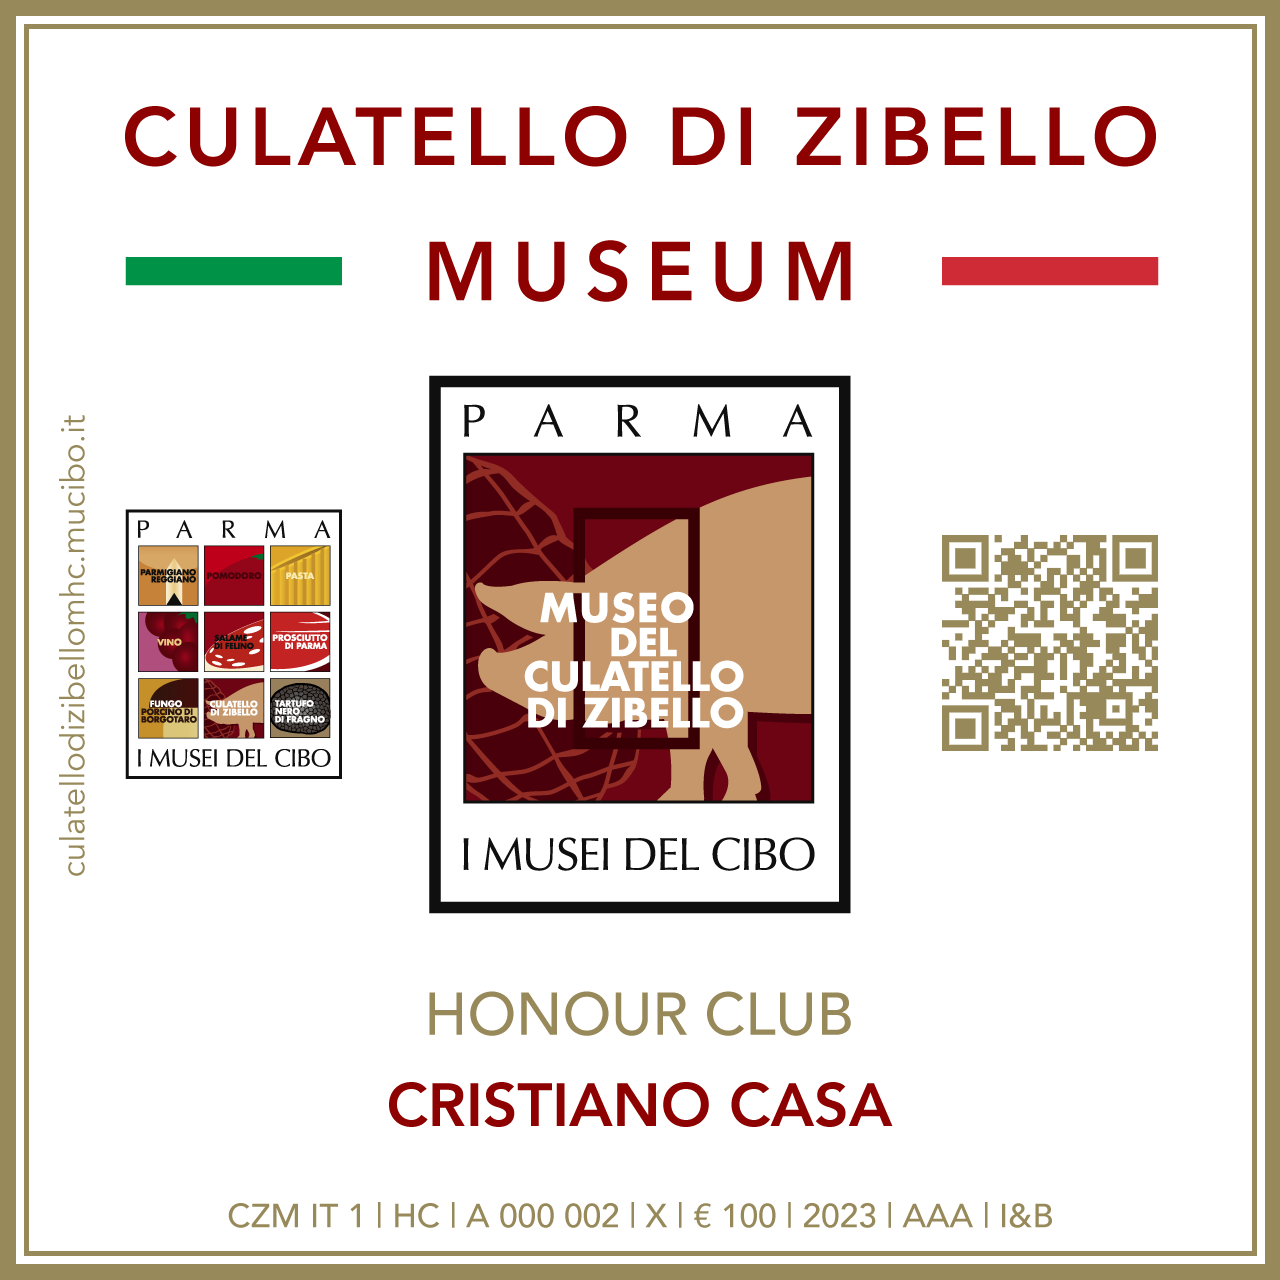 Culatello di Zibello Museum Honour Club - Token Id A 000 002 - CRISTIANO CASA